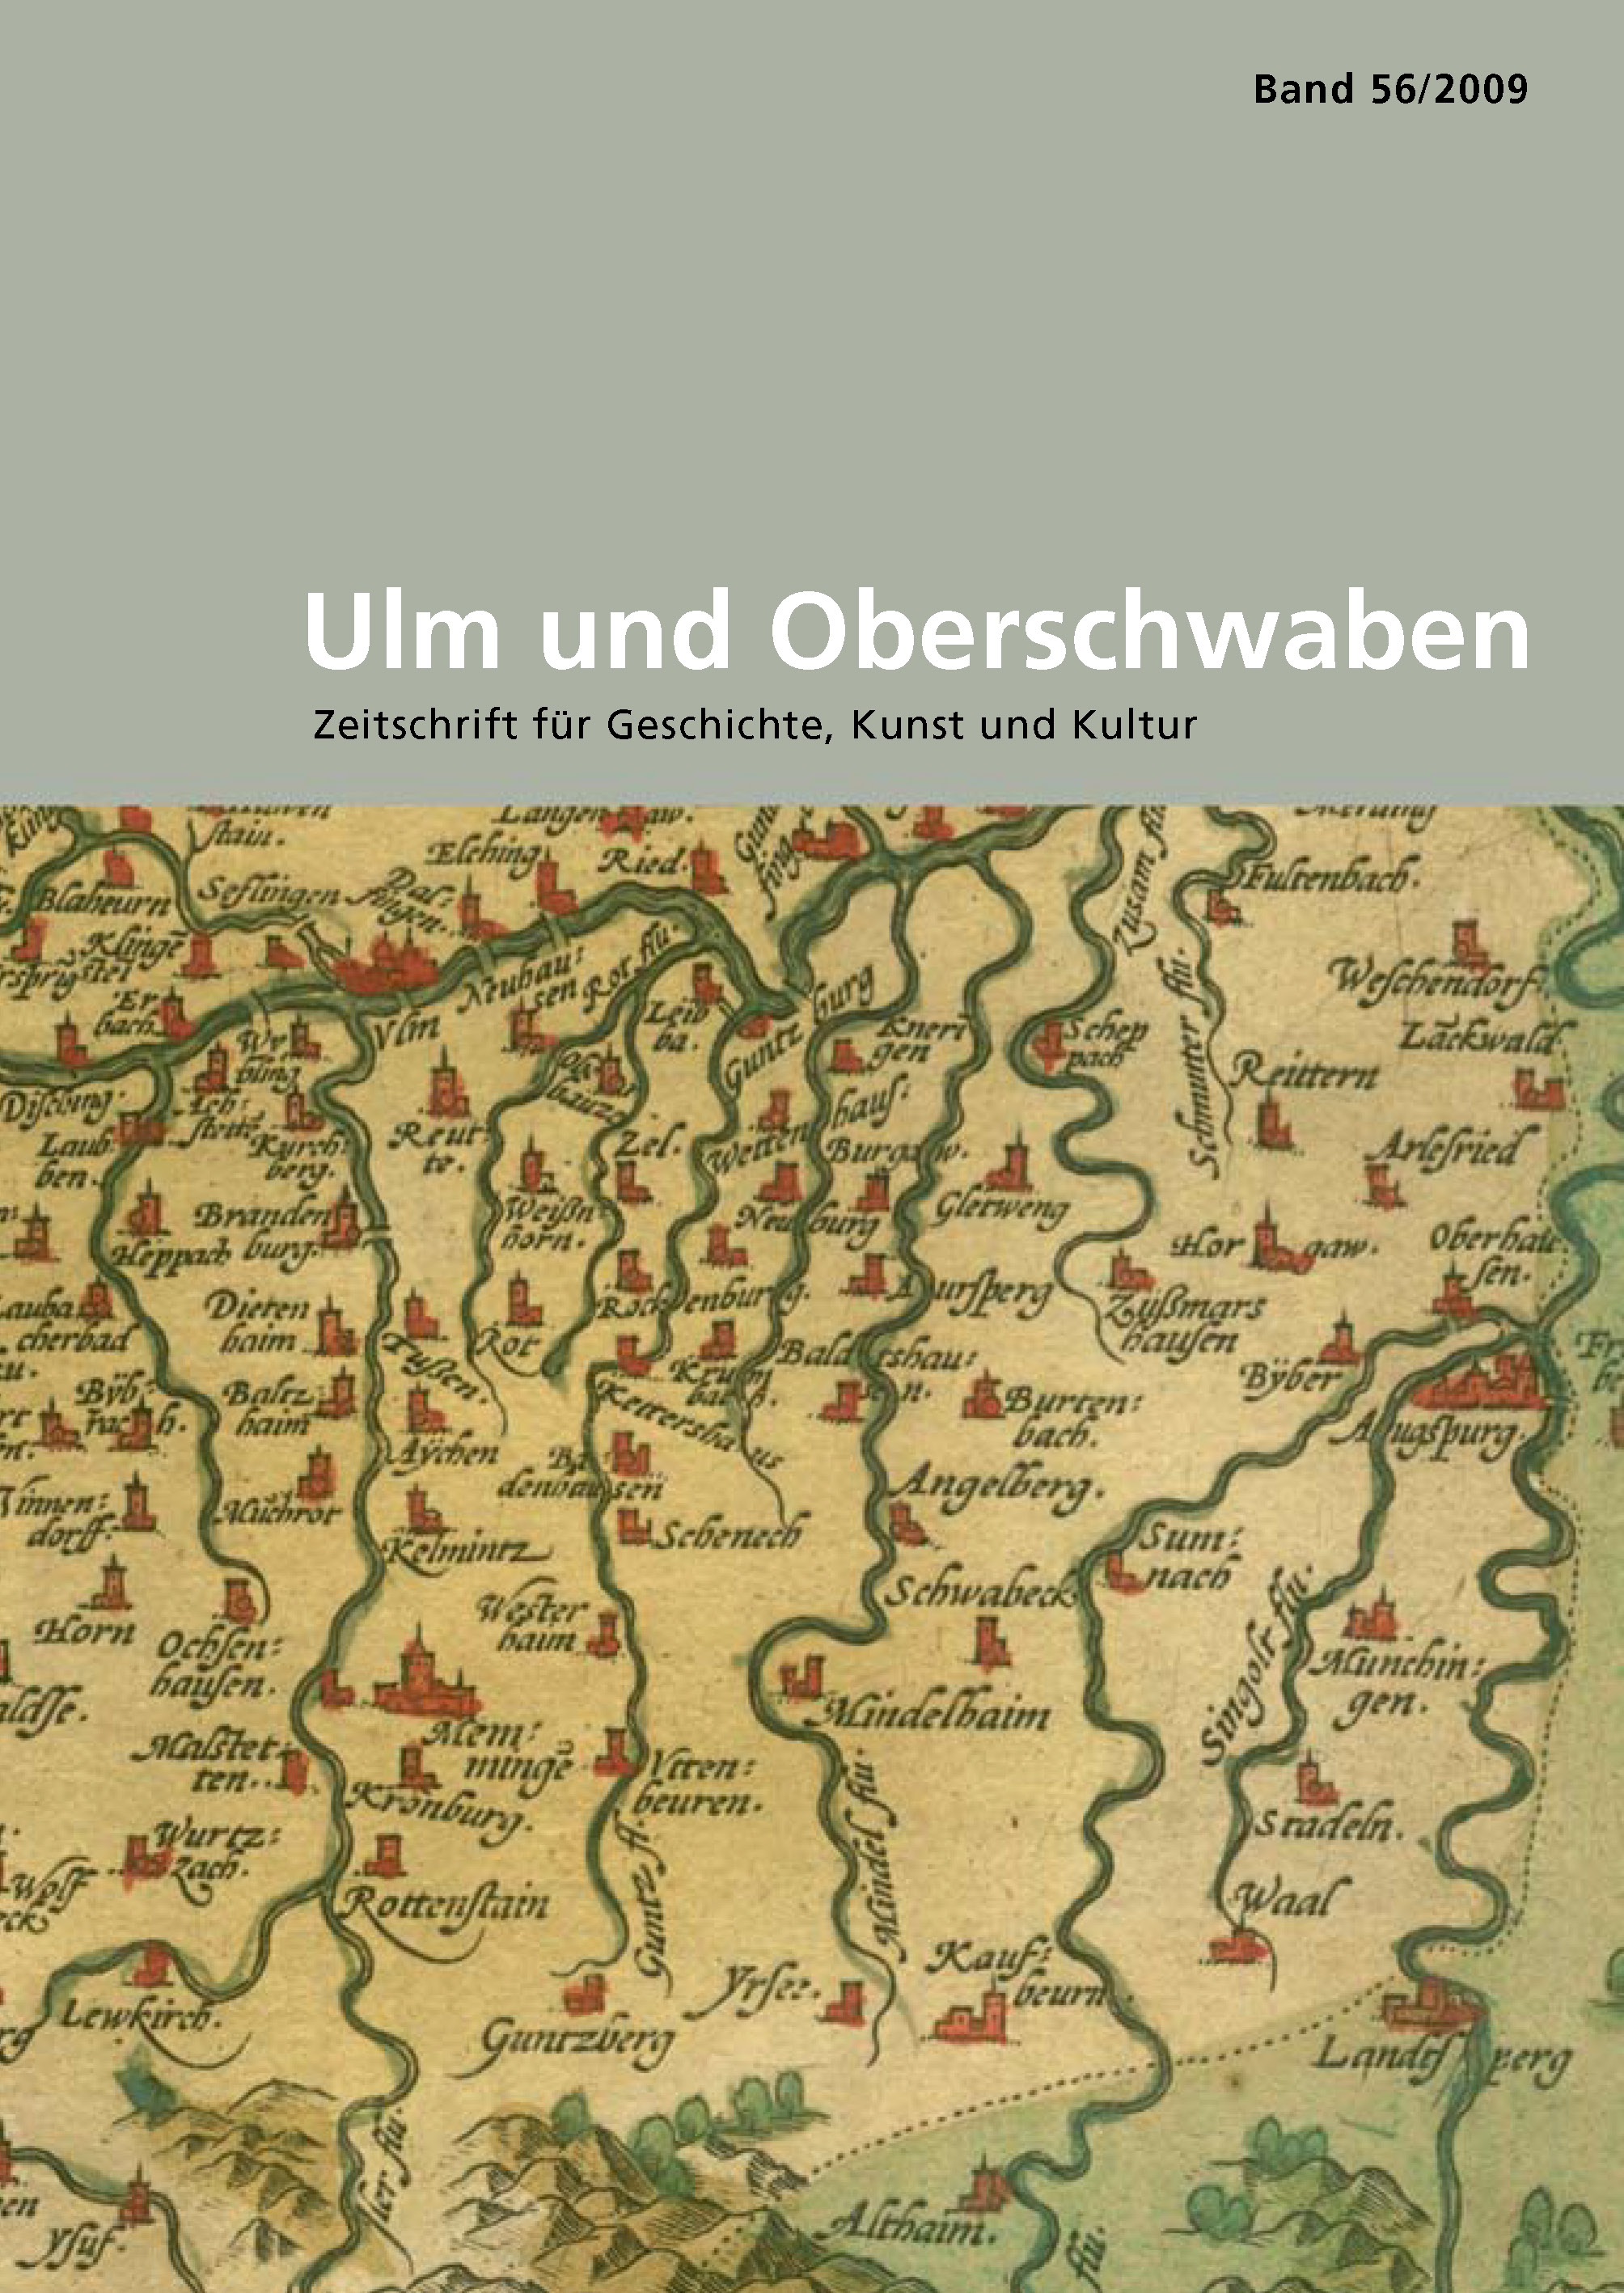                     Ansehen Bd. 56 (2009): Ulm und Oberschwaben
                